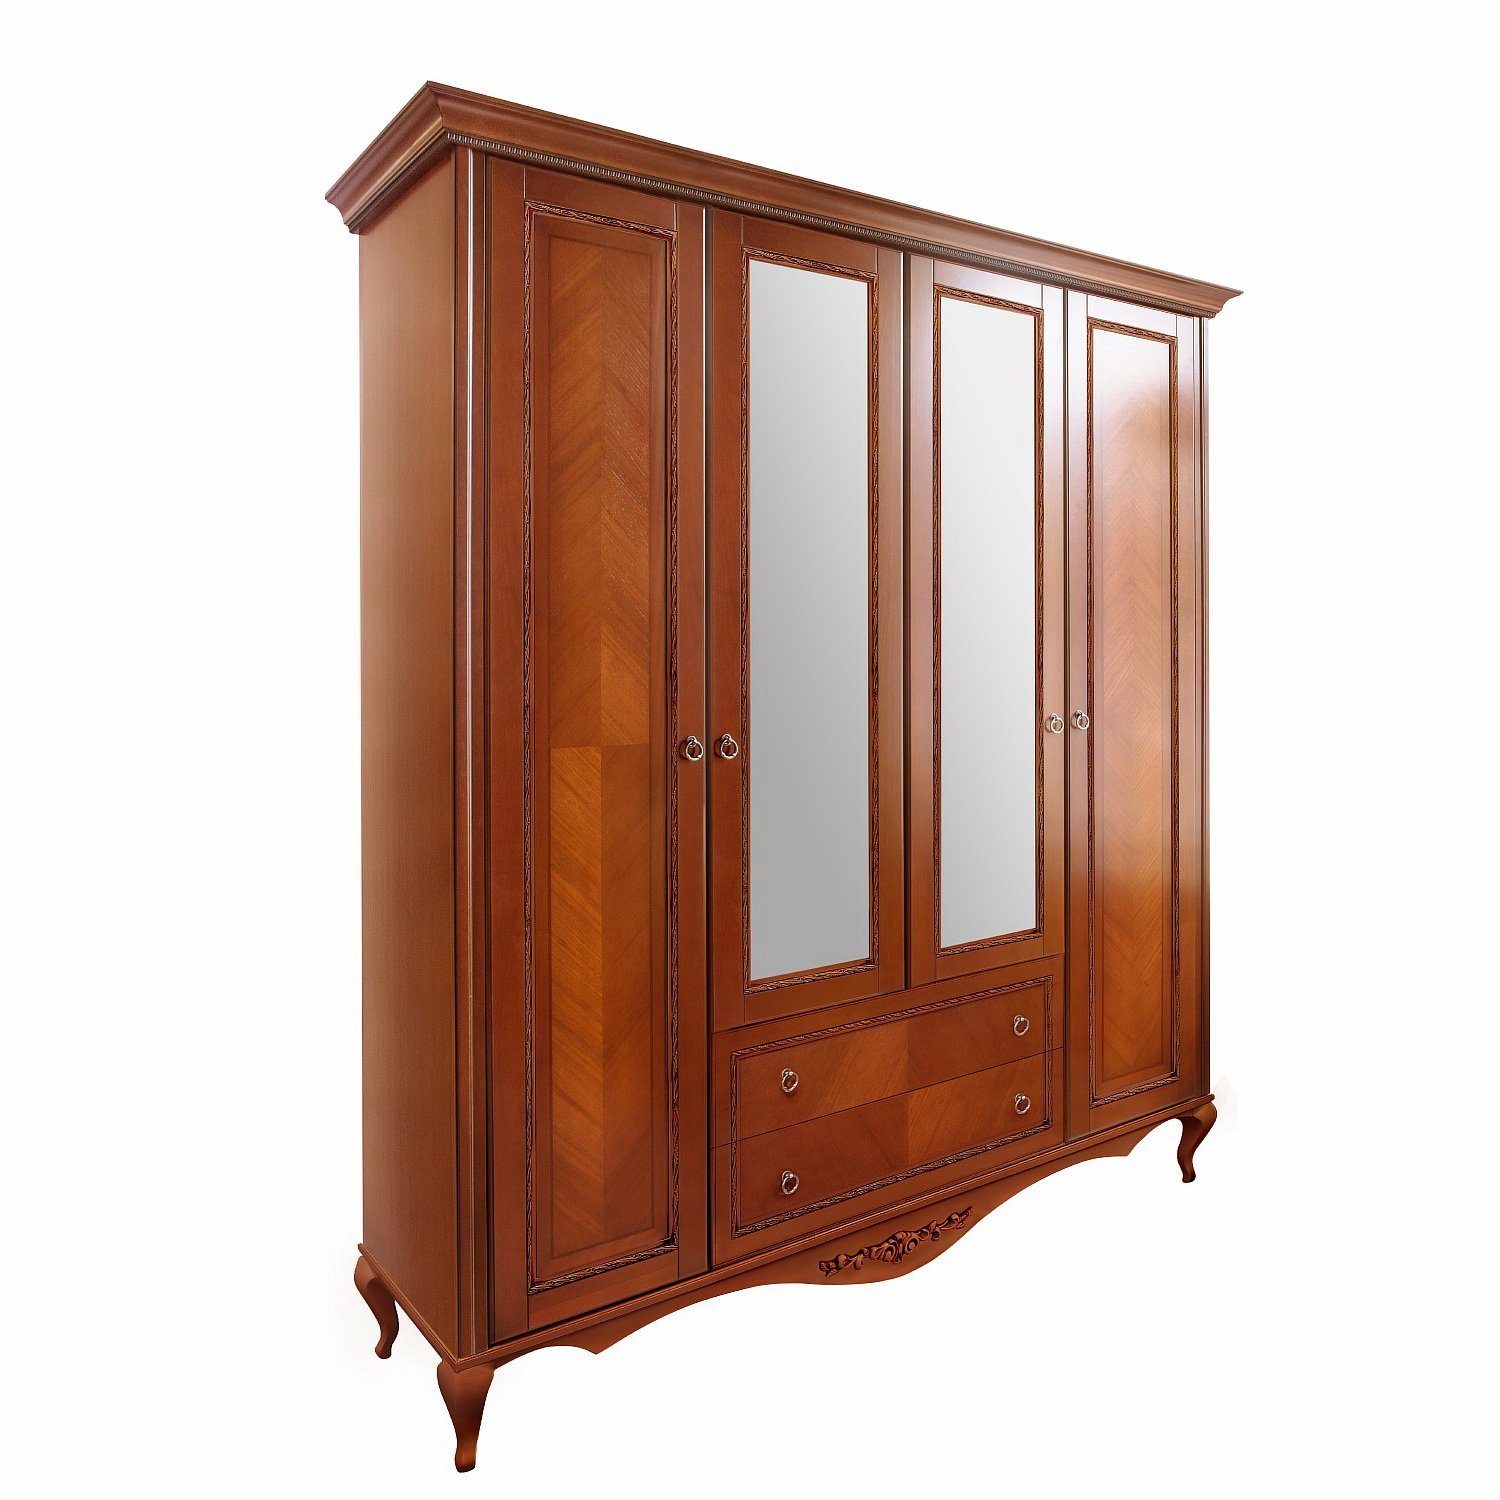 Шкаф платяной Timber Неаполь, 4-х дверный с зеркалами 204x65x227 см, цвет: янтарь (Т-524/Y)Т-524